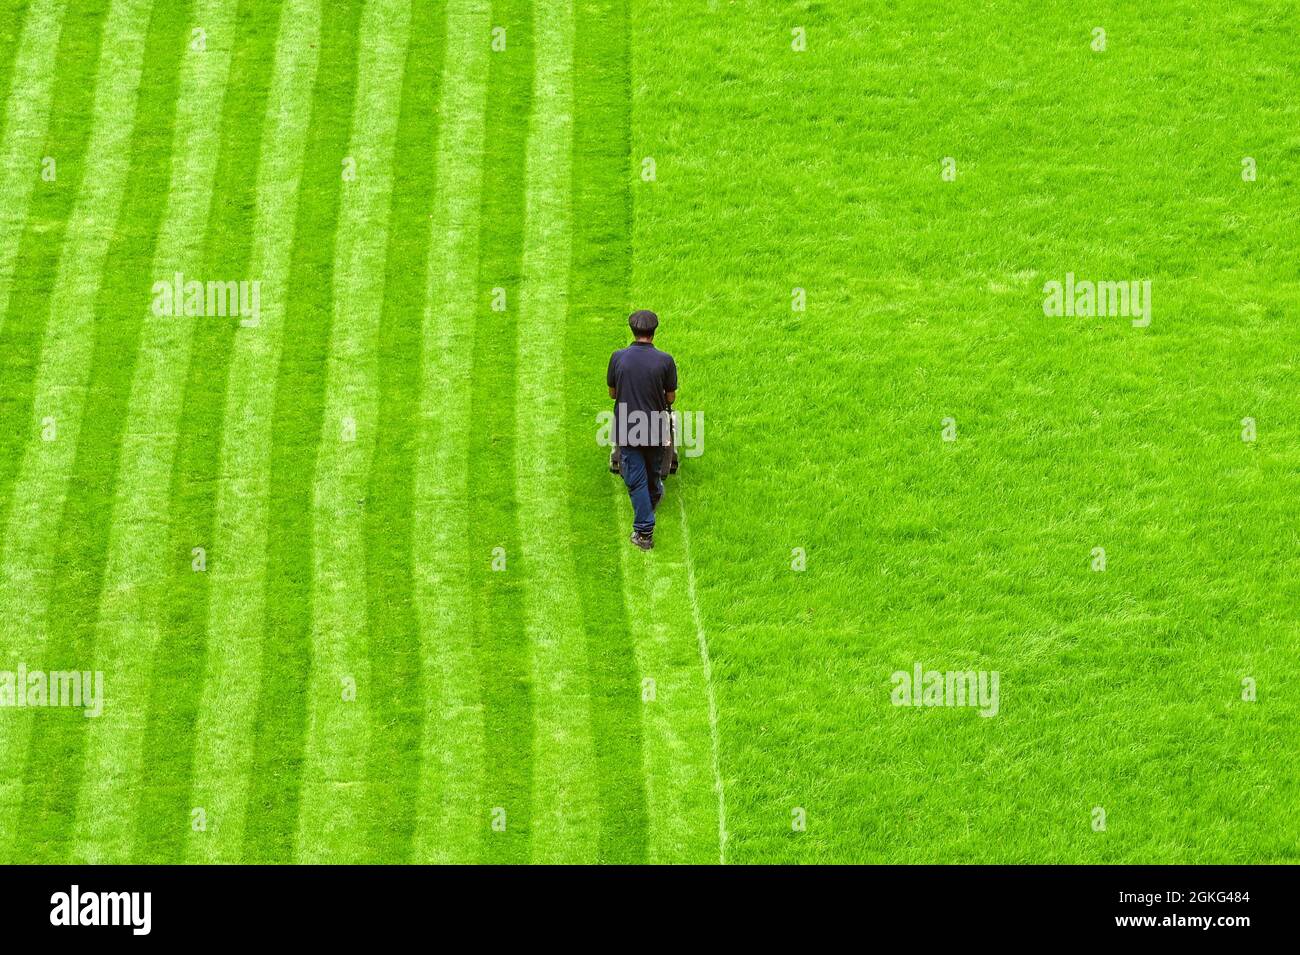 Londres, Angleterre - août 2021 : vue aérienne d'une personne fauchant une pelouse dans un parc public avec des rayures coupées dans l'herbe Banque D'Images